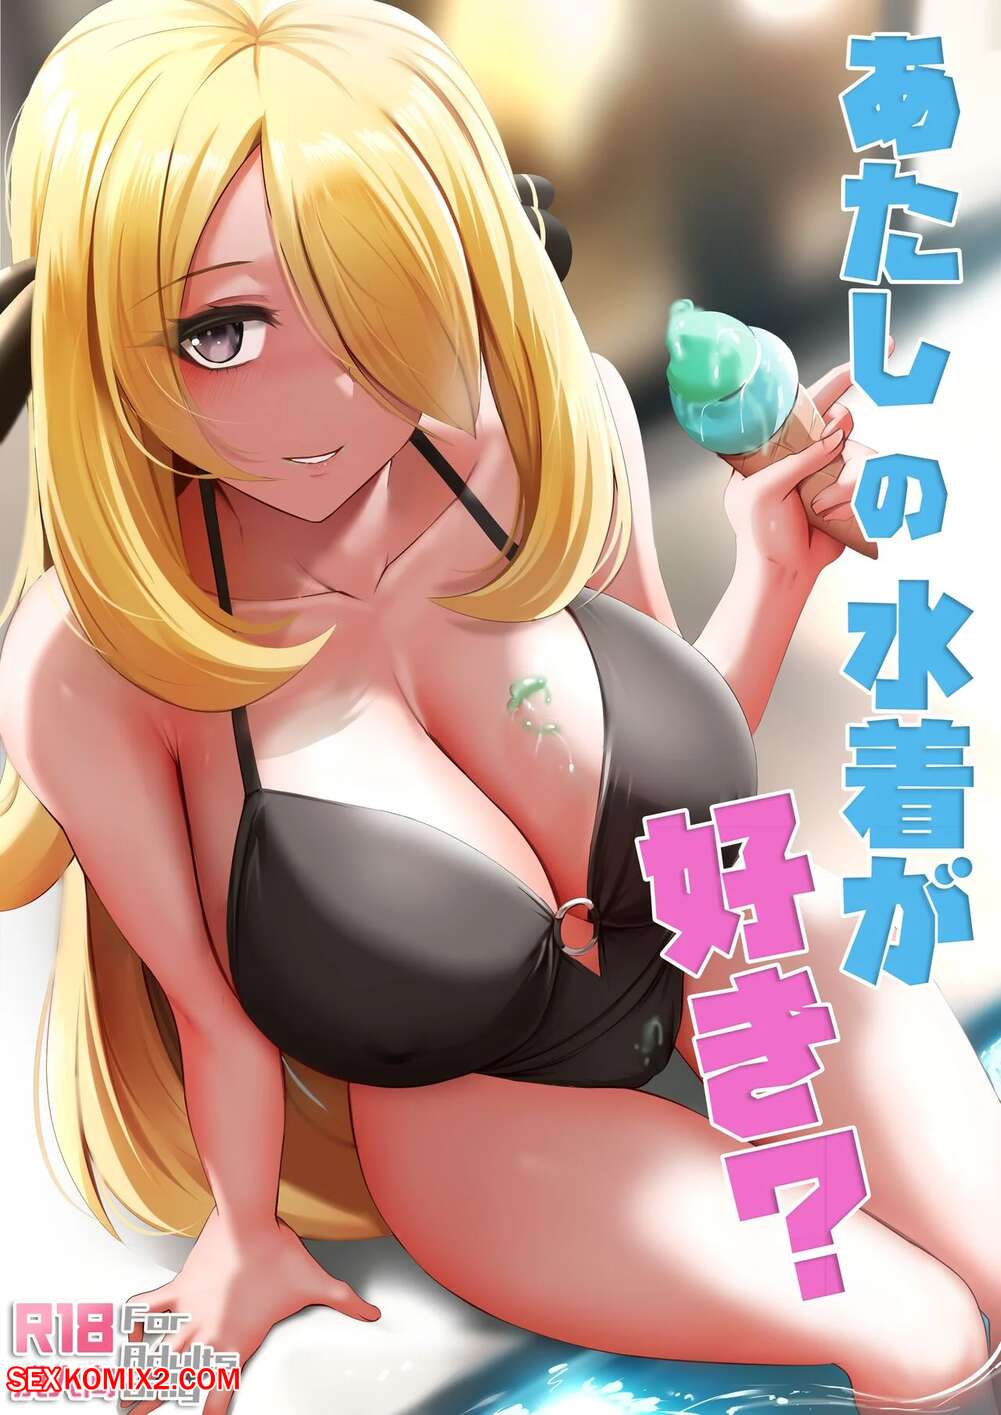 1001px x 1415px - âœ…ï¸ Porn comic Do You Like My Swimsuit. Pokemon Sex comic hot blonde beauty  | Porn comics in English for adults only | sexkomix2.com